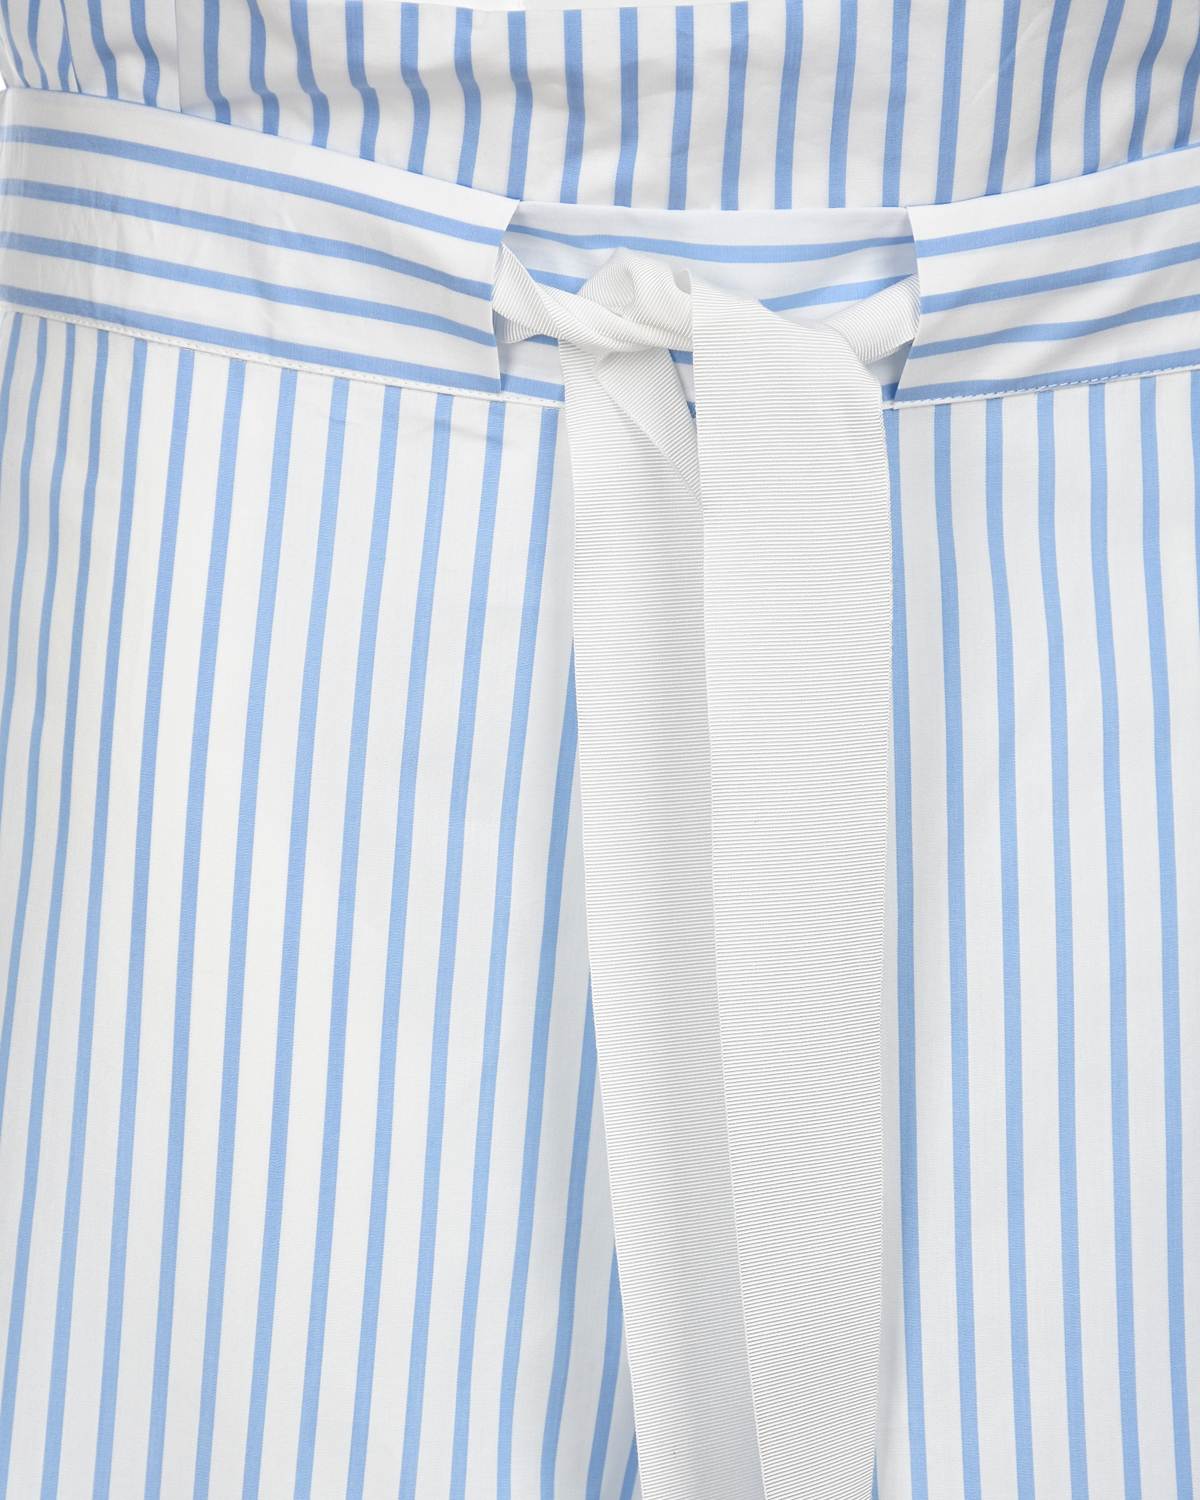 Юбка-брюки в бело-голубую полоску Sara Roka, размер 42, цвет белый - фото 3